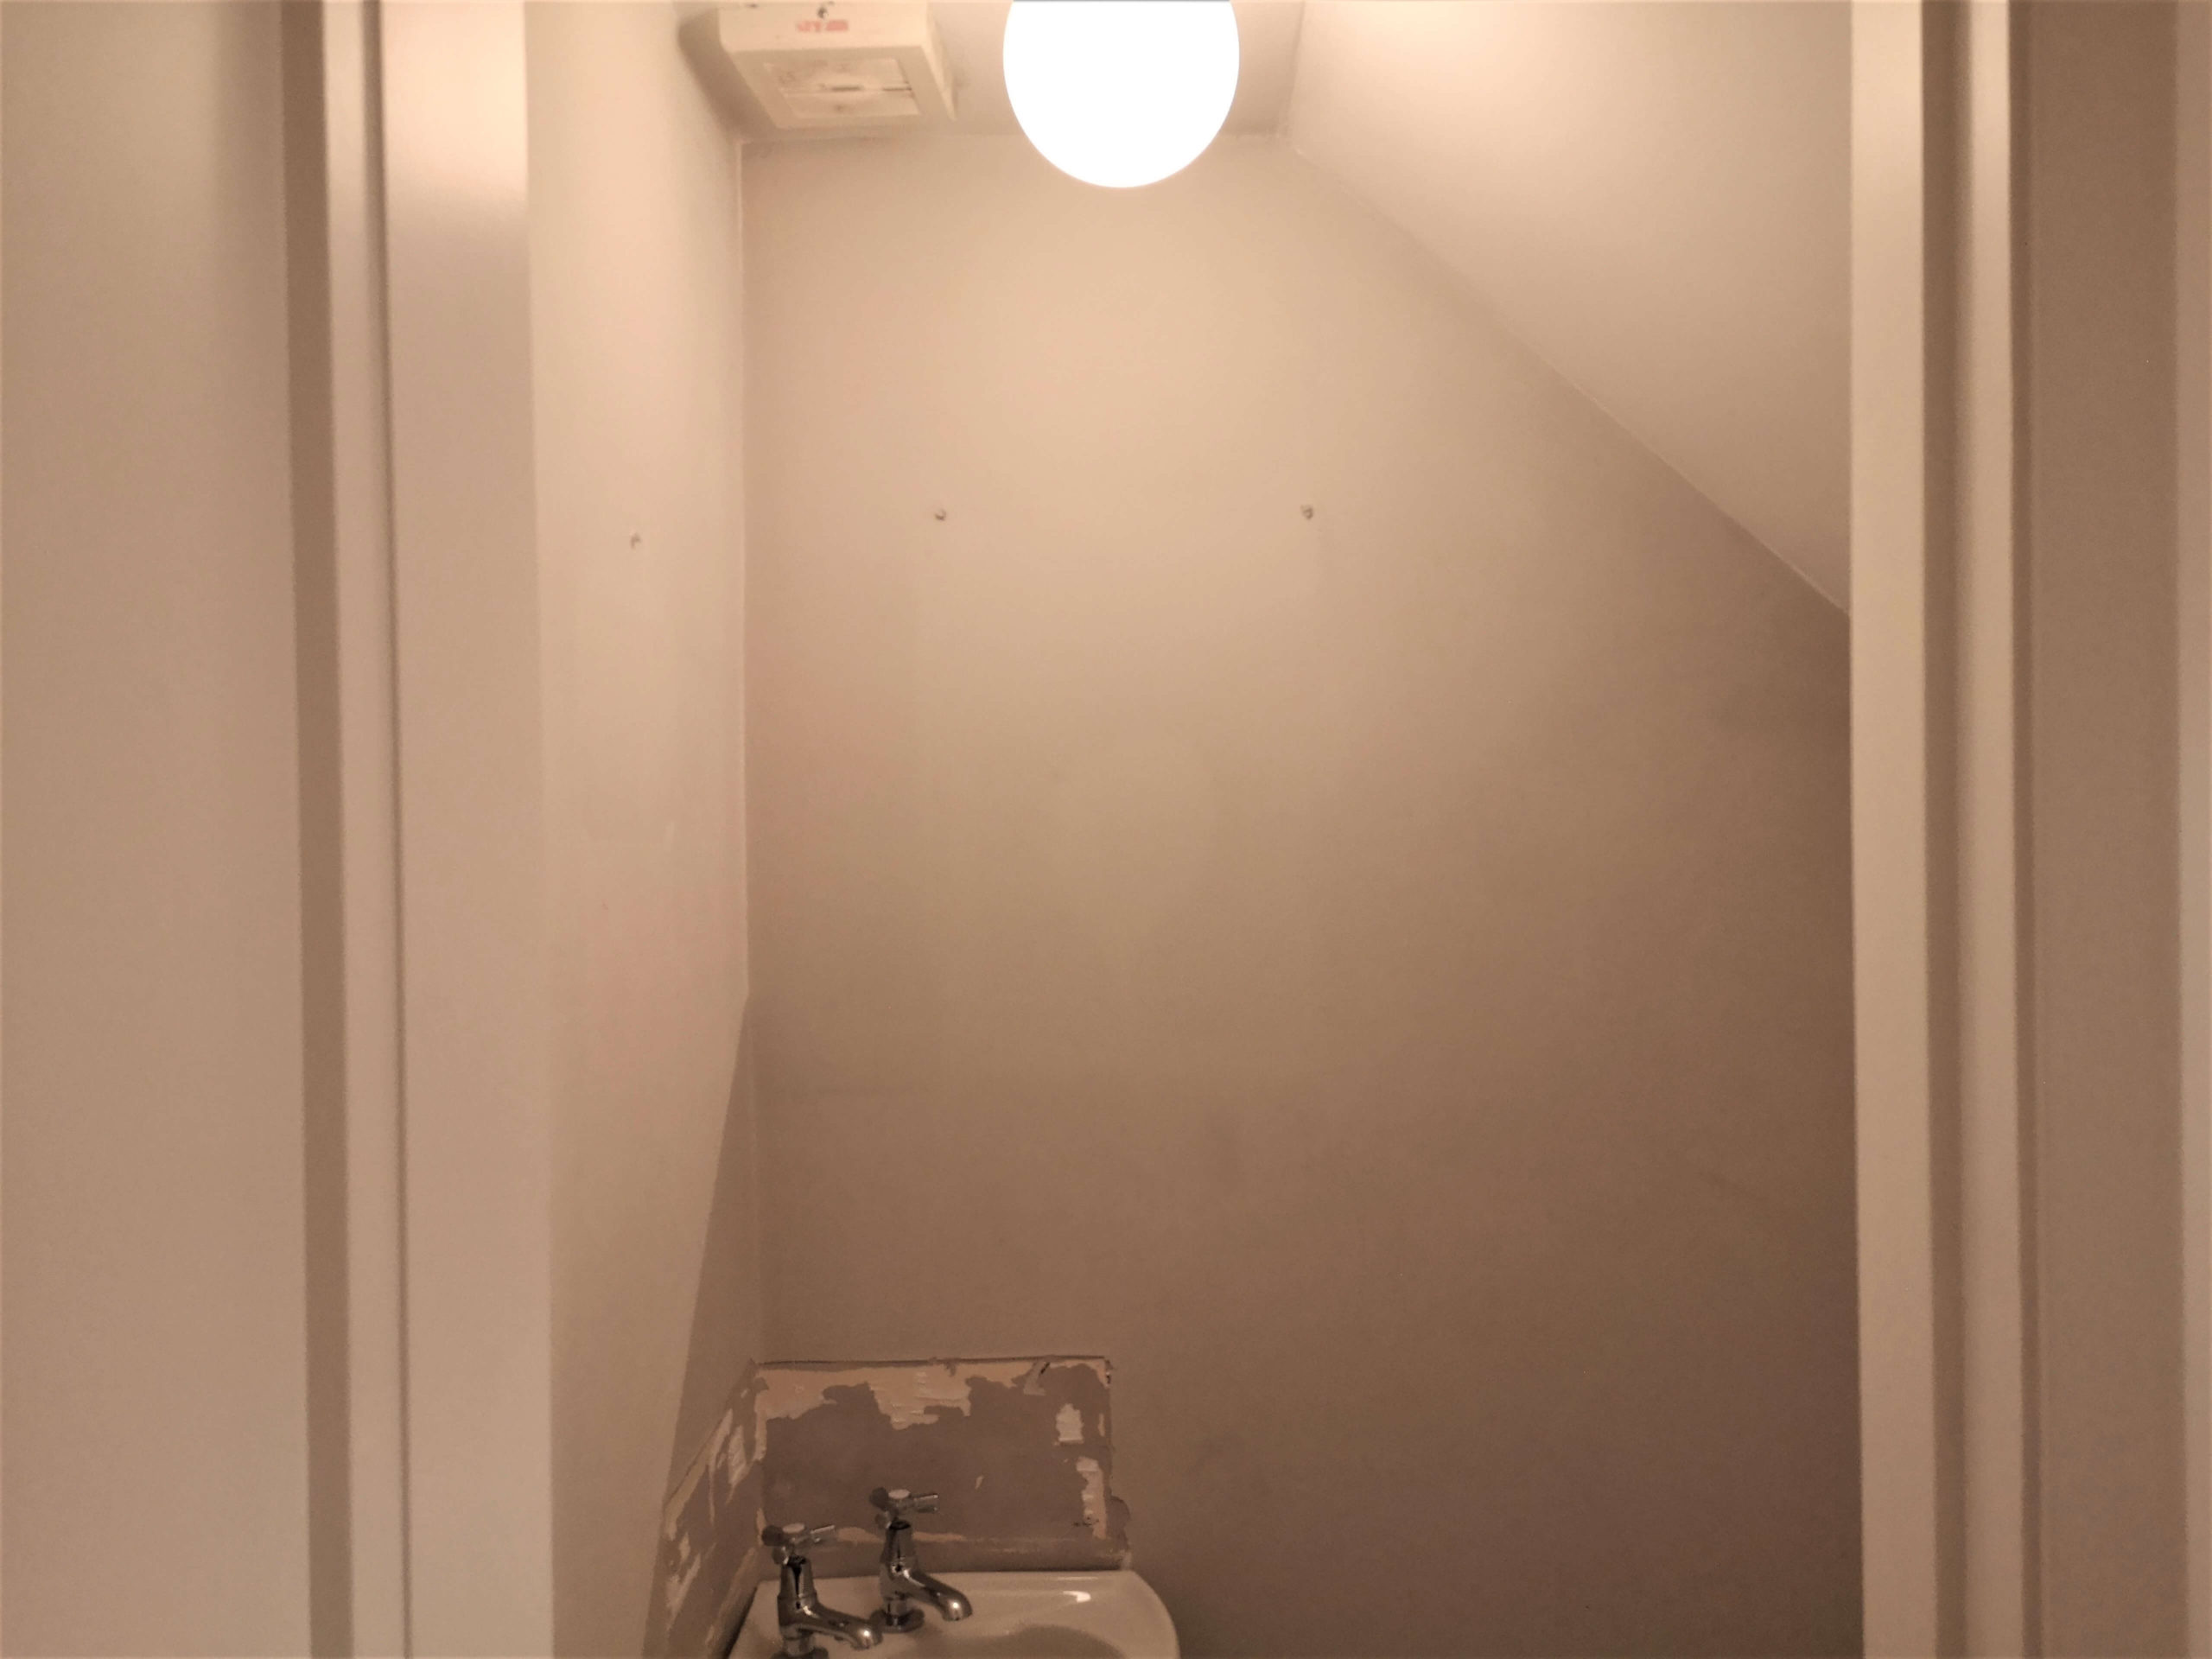 A view into a small, bare bathroom.